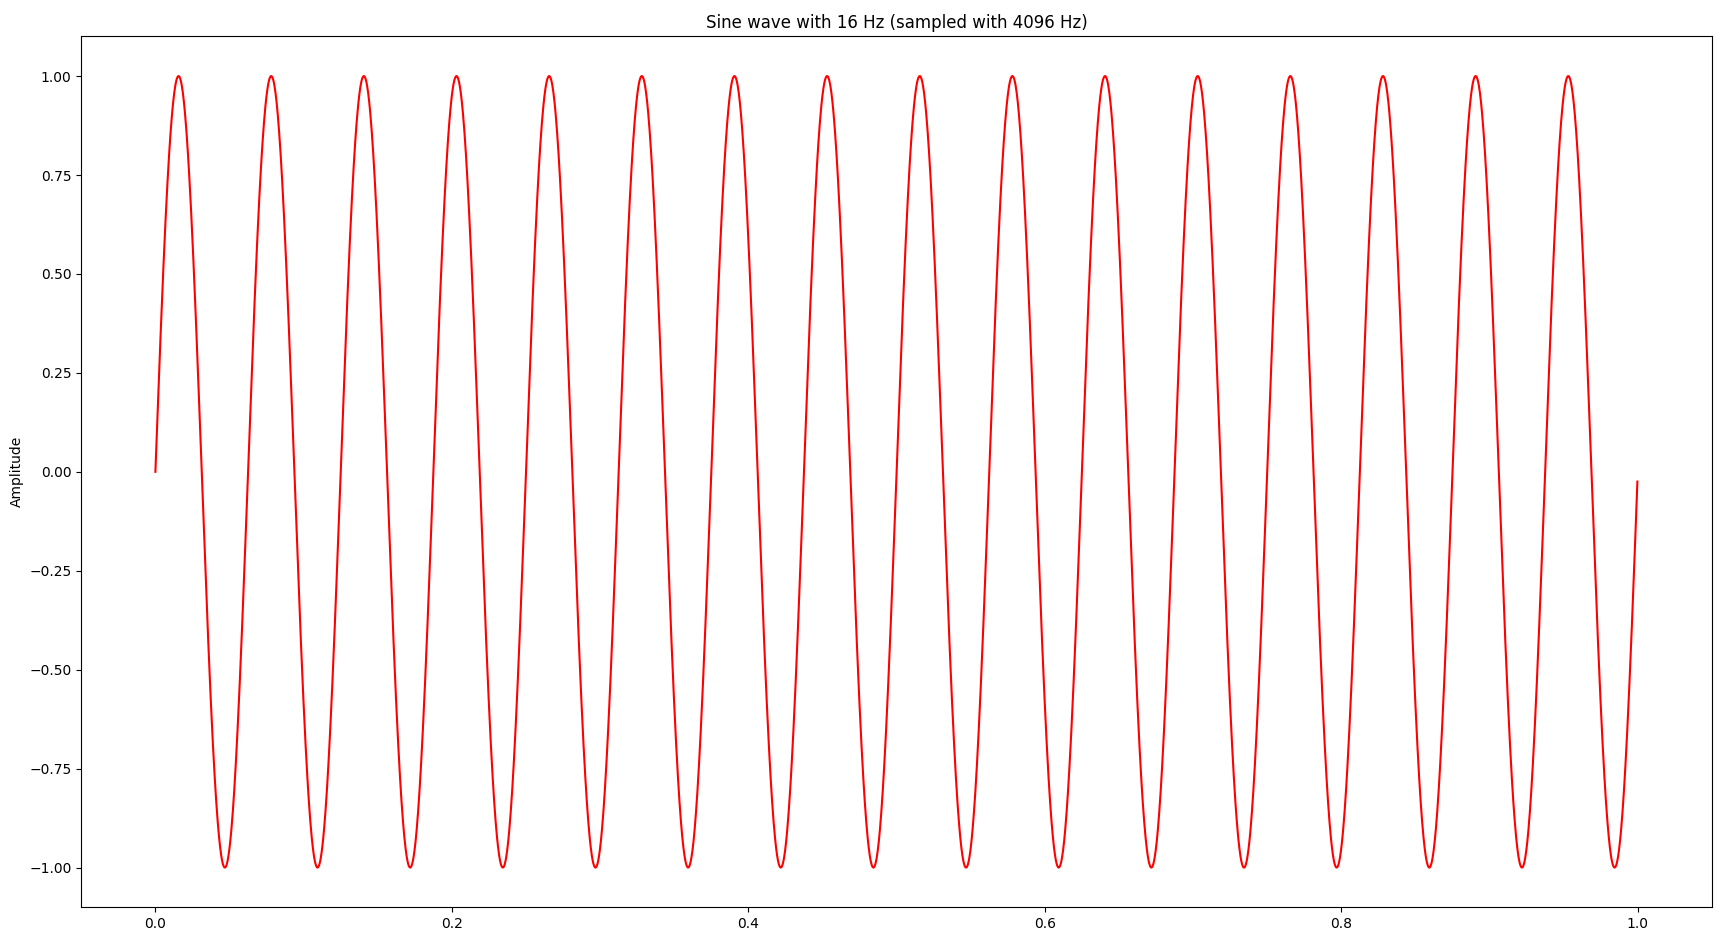 A sine wave with 16 Hz